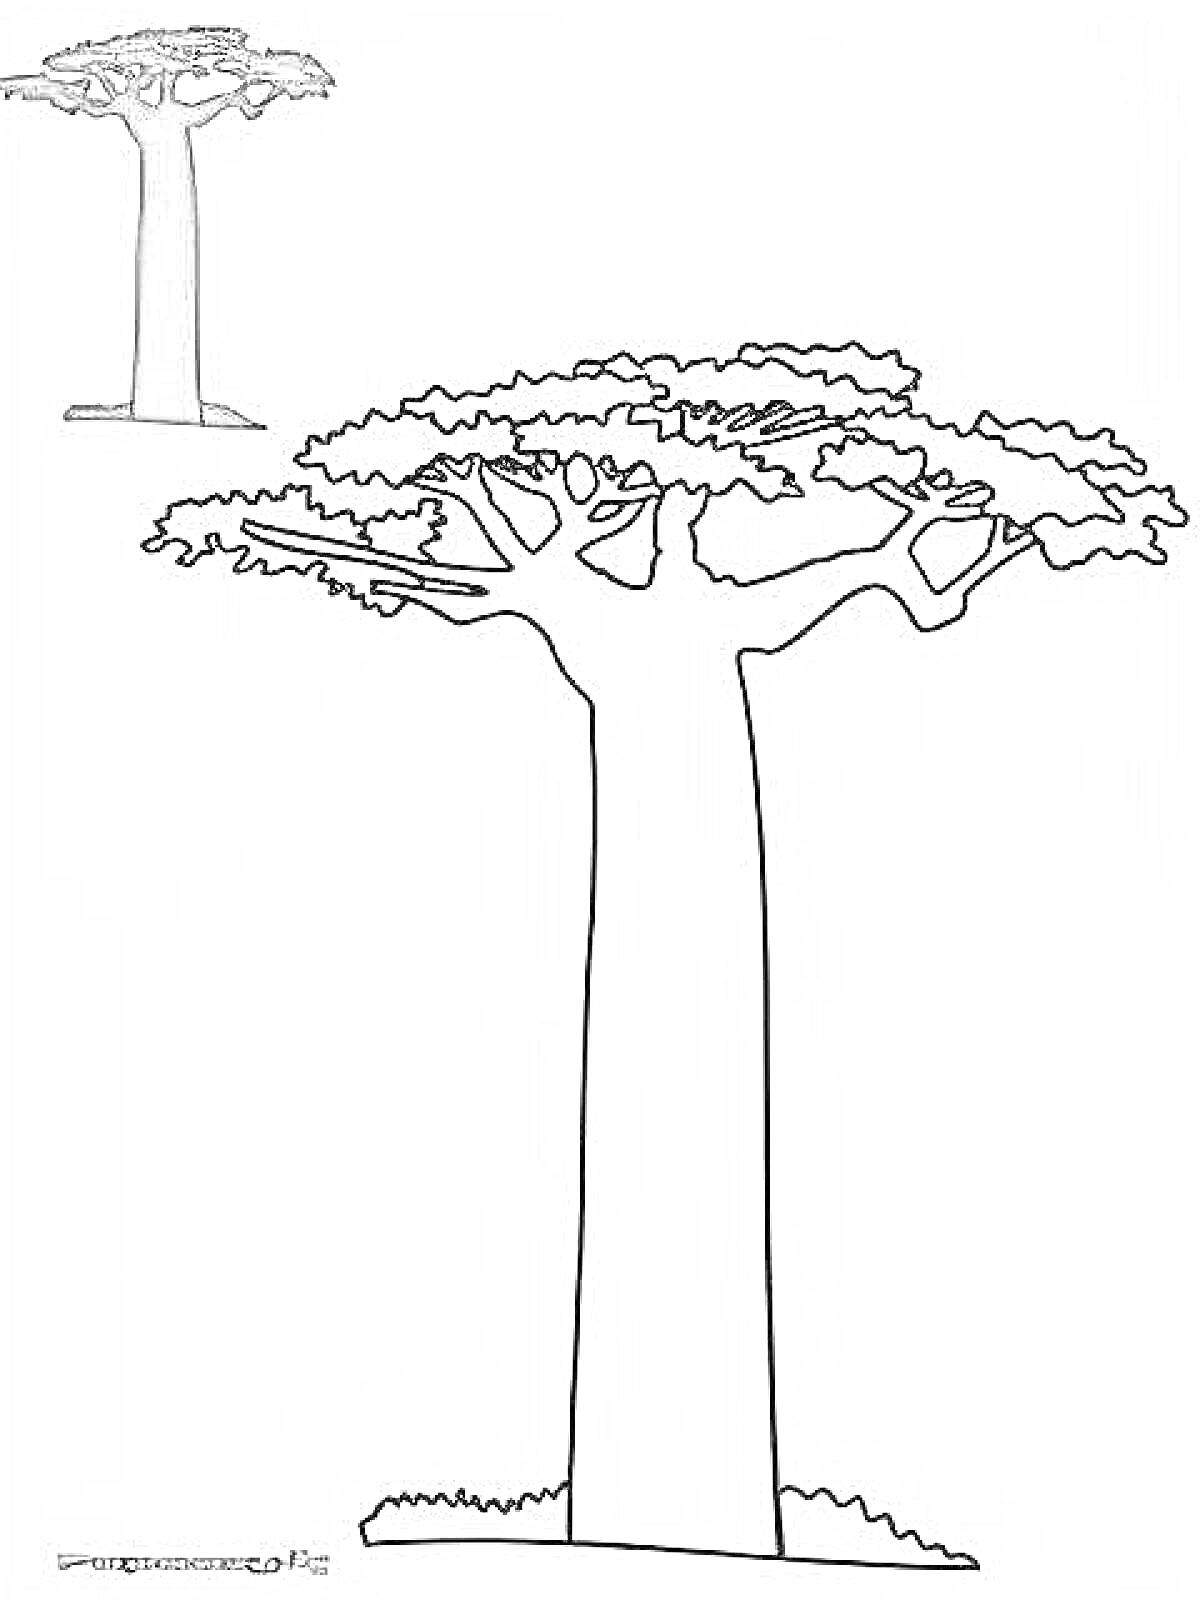 Раскраска Баобаб с листьями и тенью (крупное и мелкое изображение)